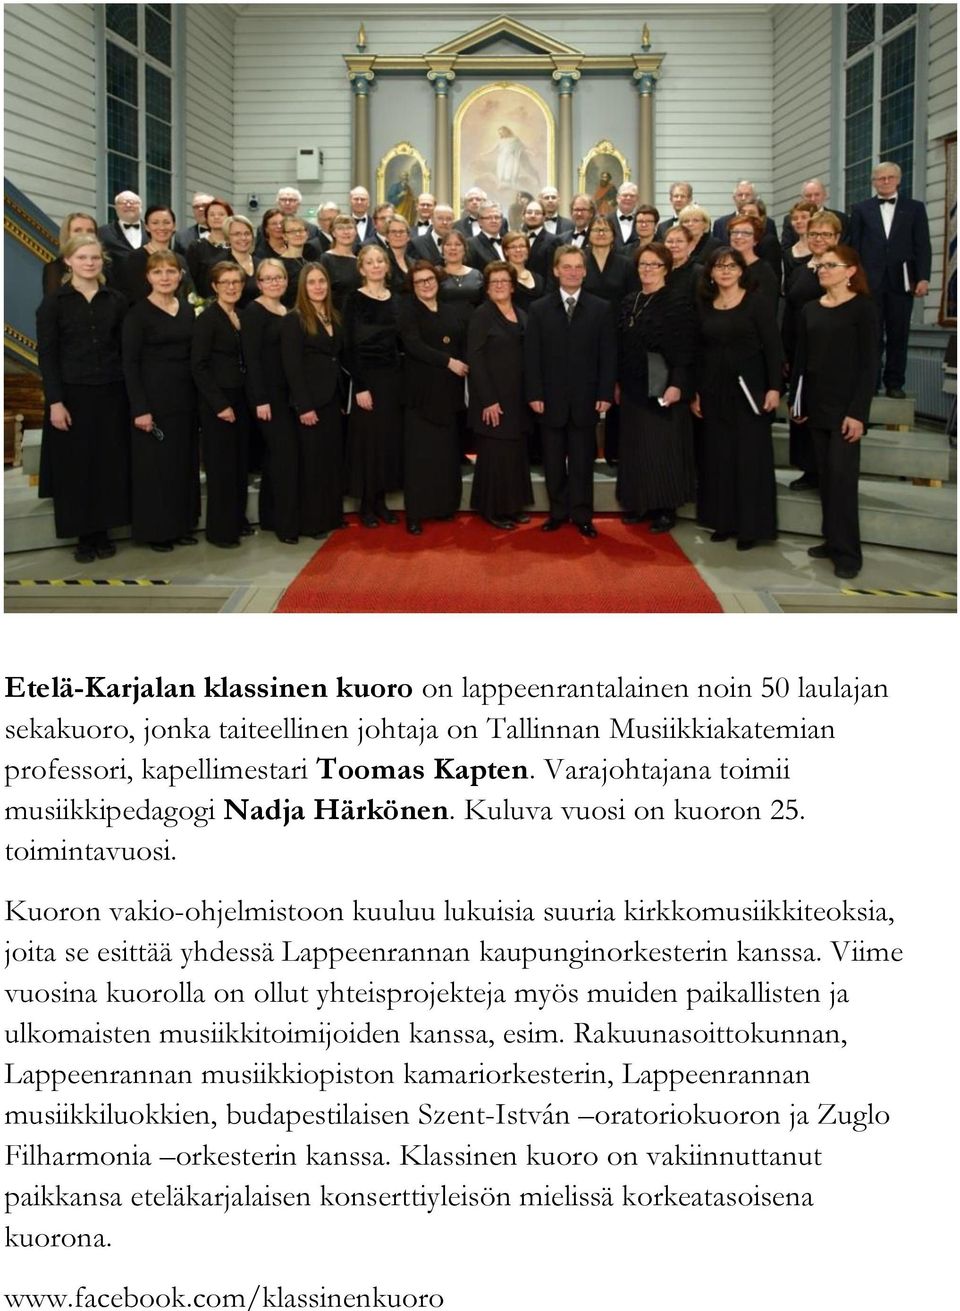 Kuoron vakio-ohjelmistoon kuuluu lukuisia suuria kirkkomusiikkiteoksia, joita se esittää yhdessä Lappeenrannan kaupunginorkesterin kanssa.